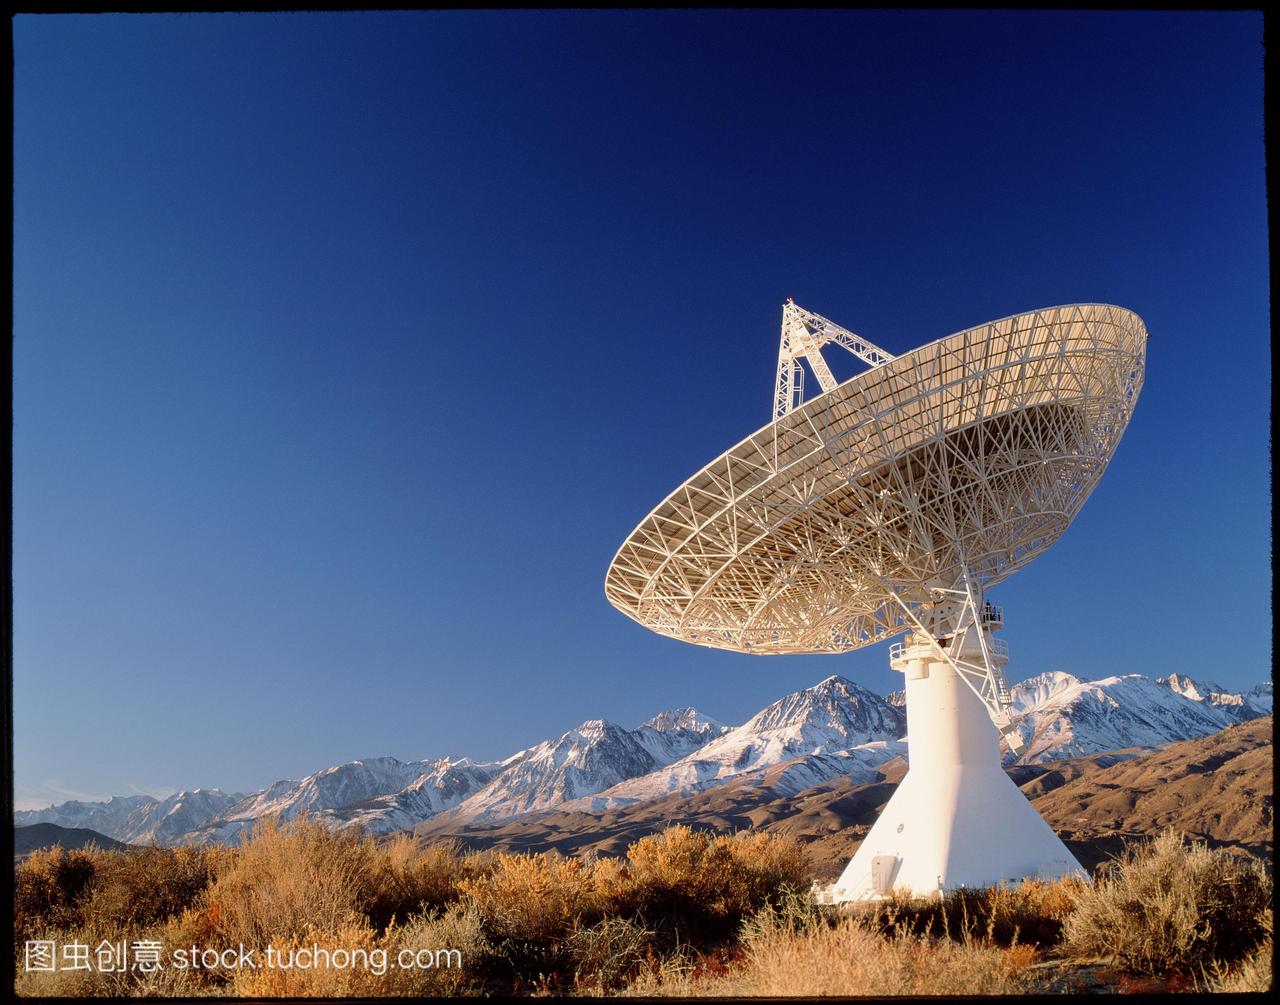 宇宙微波望远镜有盘直径40米130英尺。